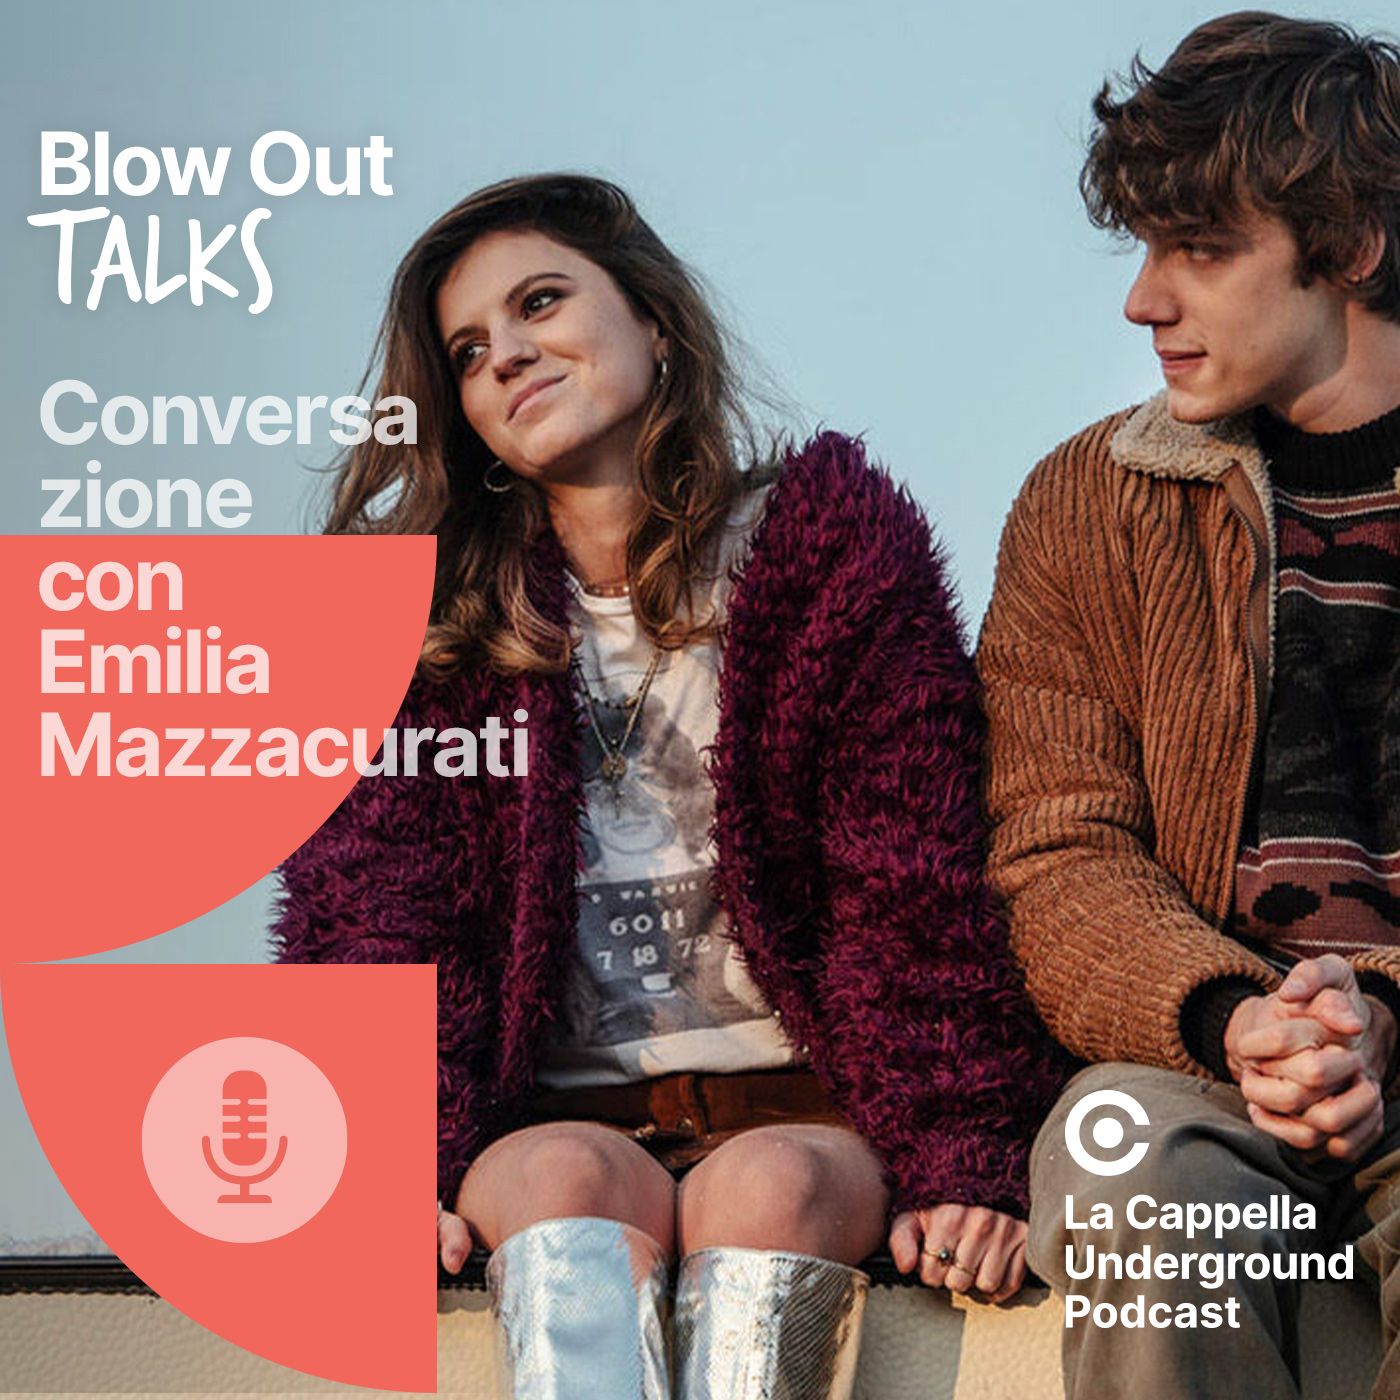 Blow Out Talks - Conversazione con Emilia Mazzacurati (Live!)